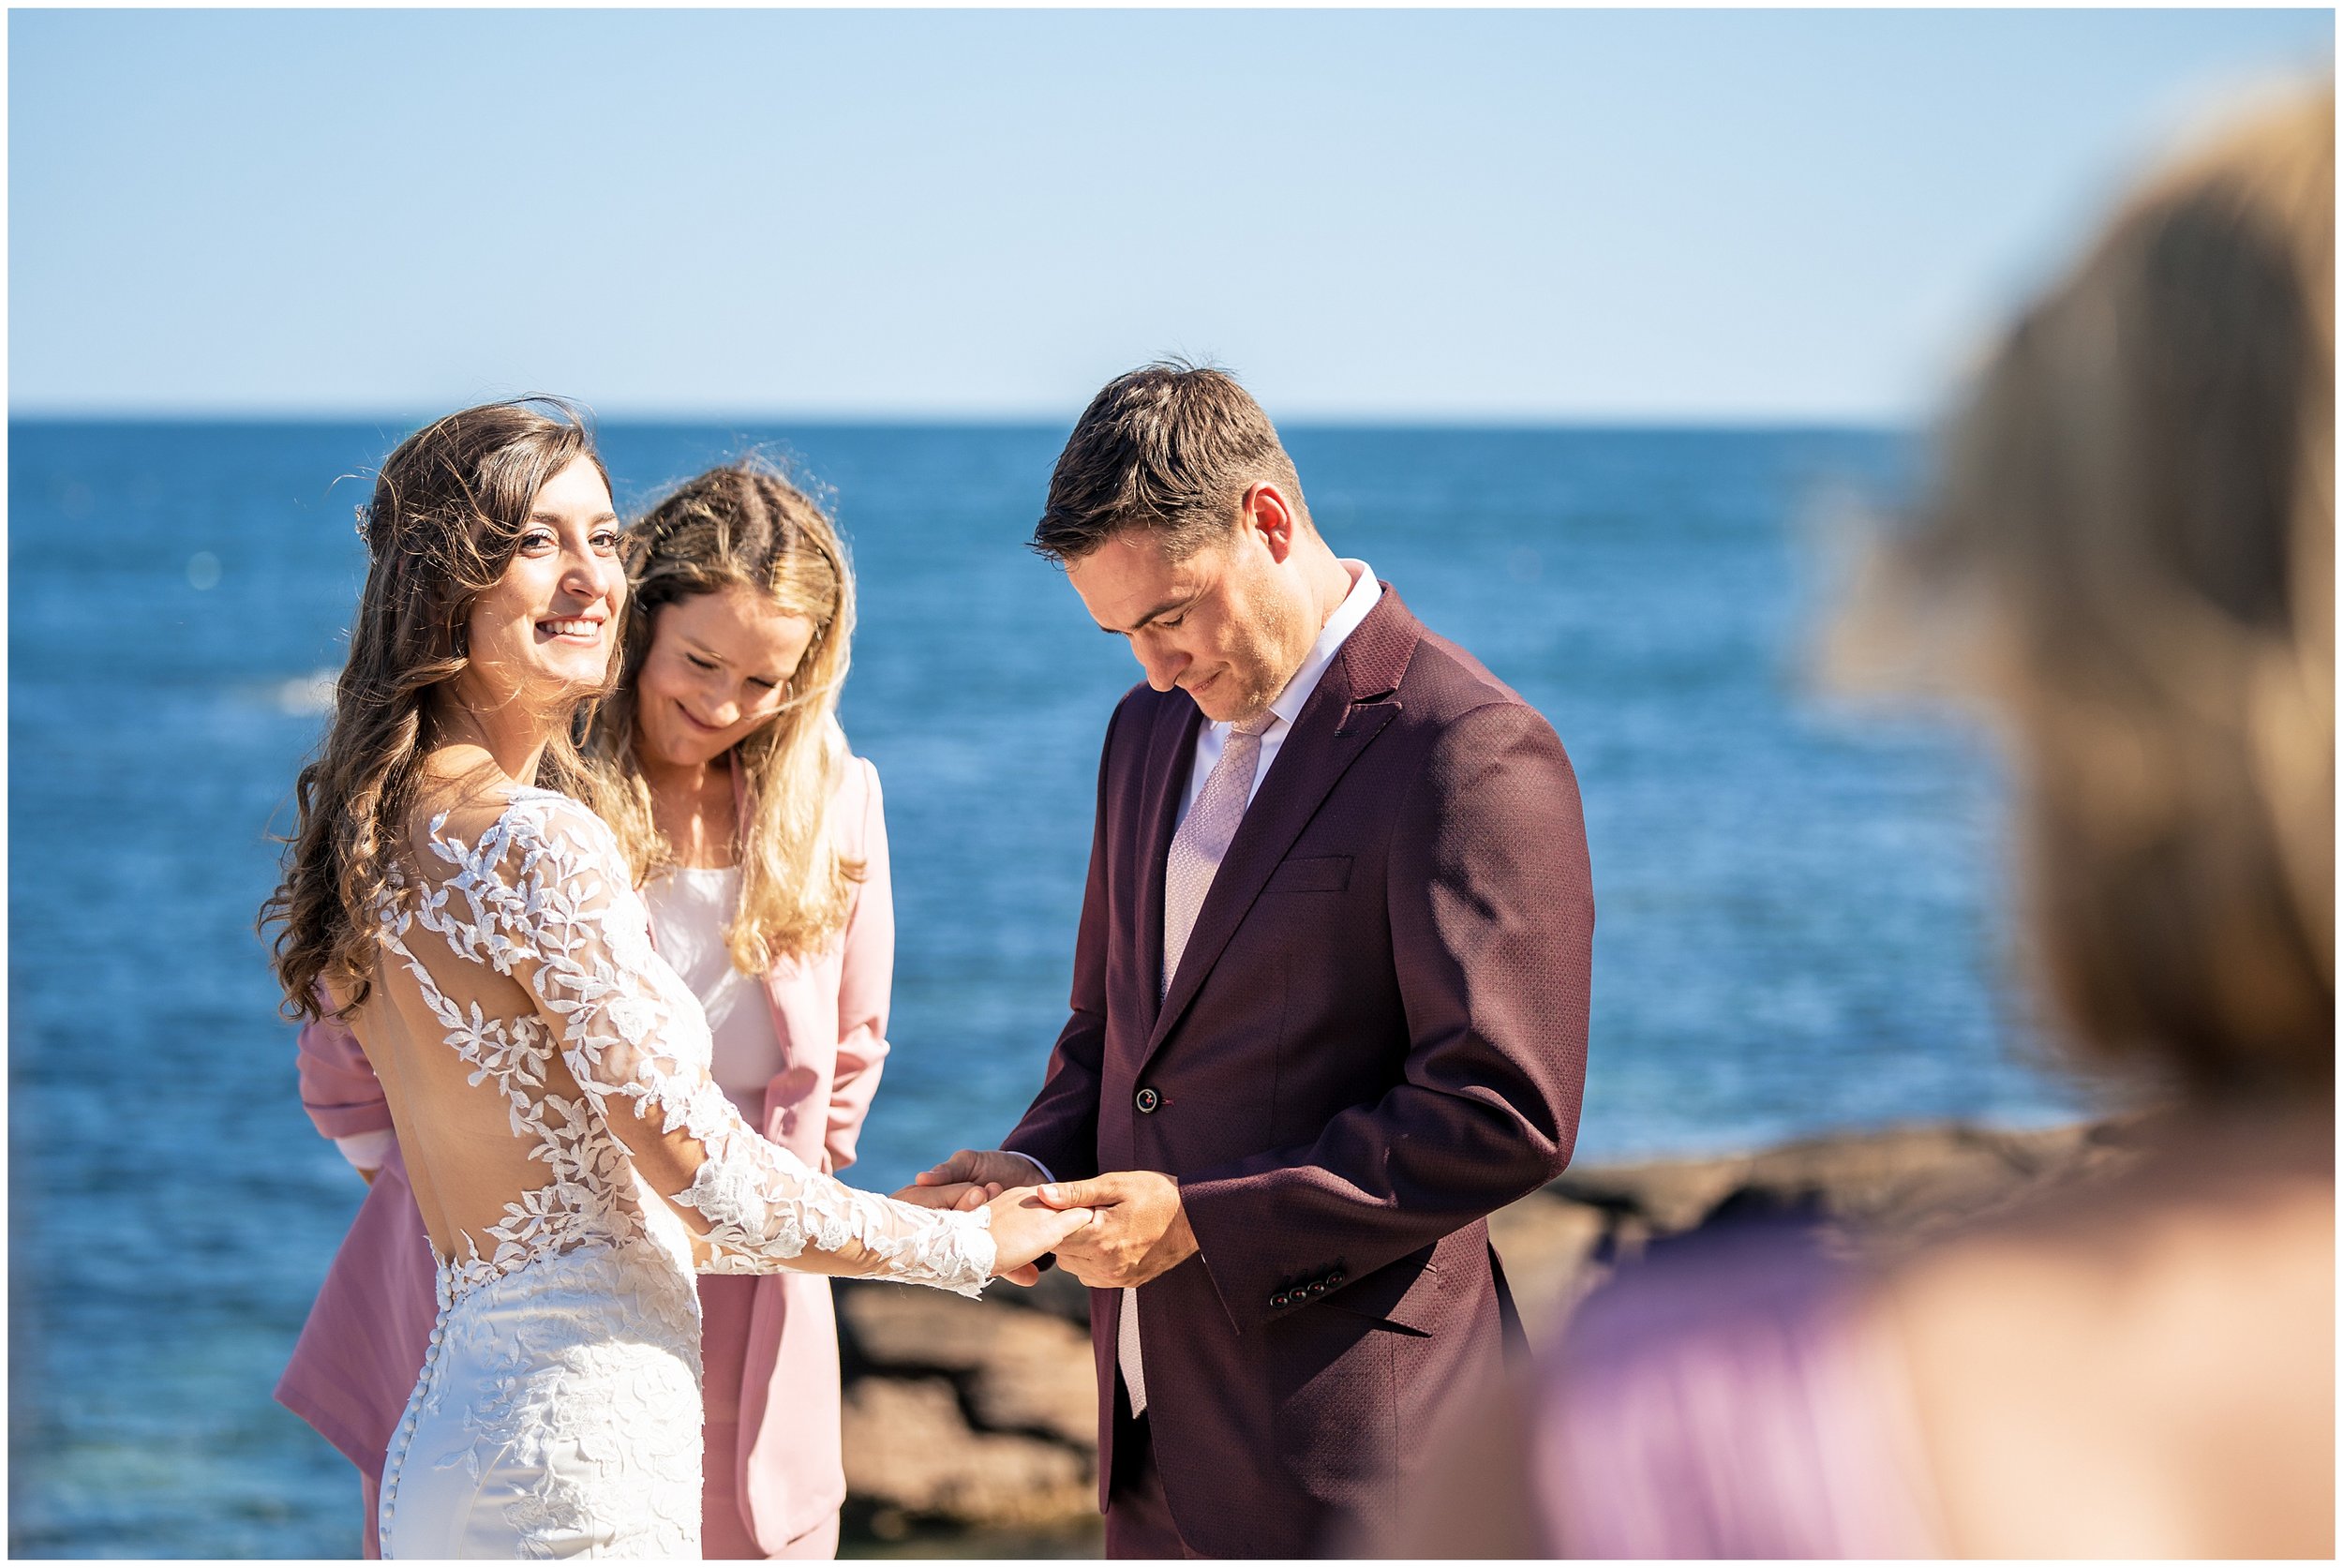 Acadia National Park Wedding Photographers, Bar Harbor Wedding Photographers, Two Adventurous Souls- 082423_0031.jpg